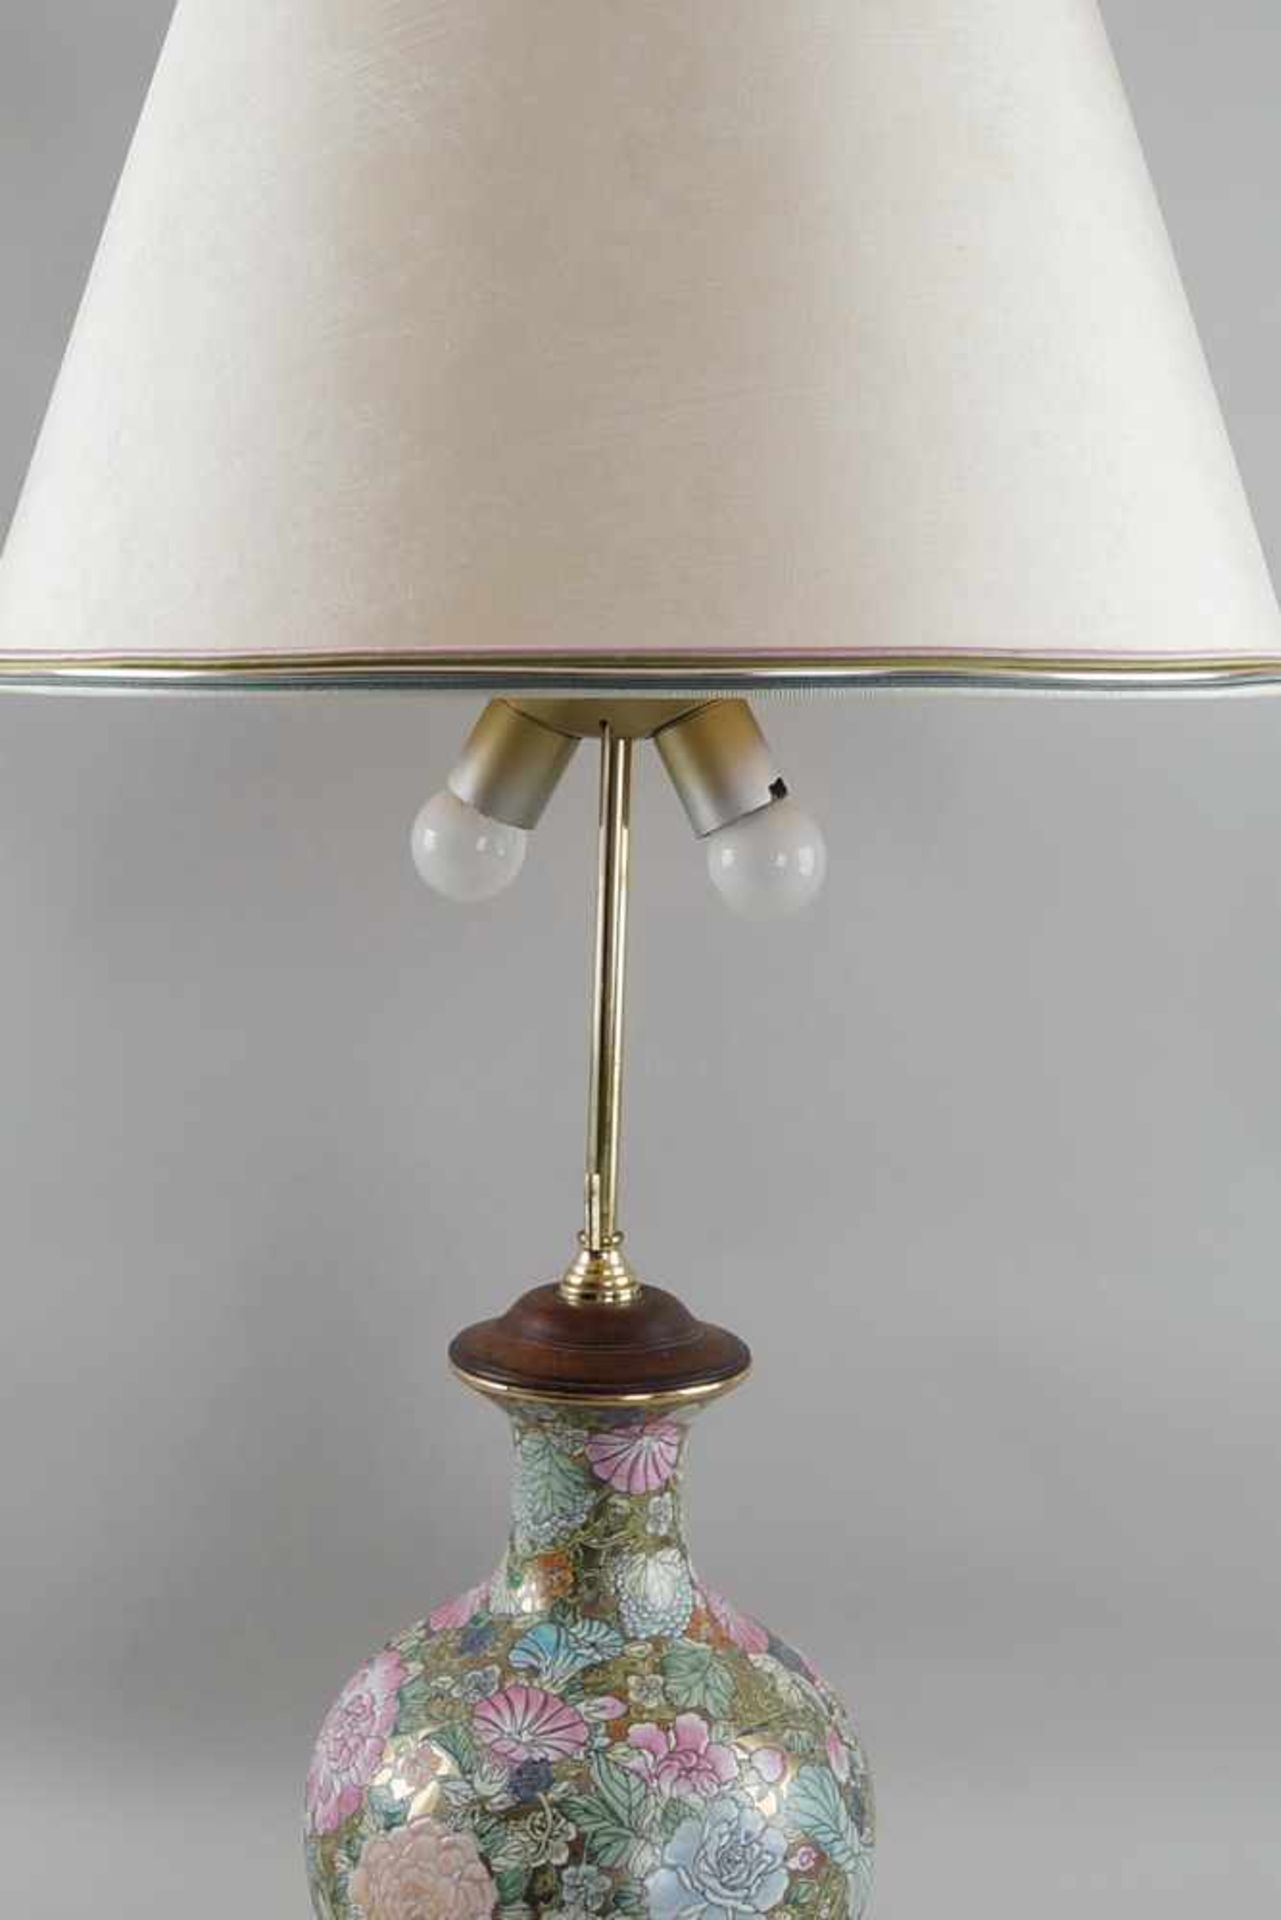 Tischlampe, ehem. asiatische Vase, auf Holzstand, elektrifiziert, mit Schirm, H 90 cm - Bild 2 aus 6